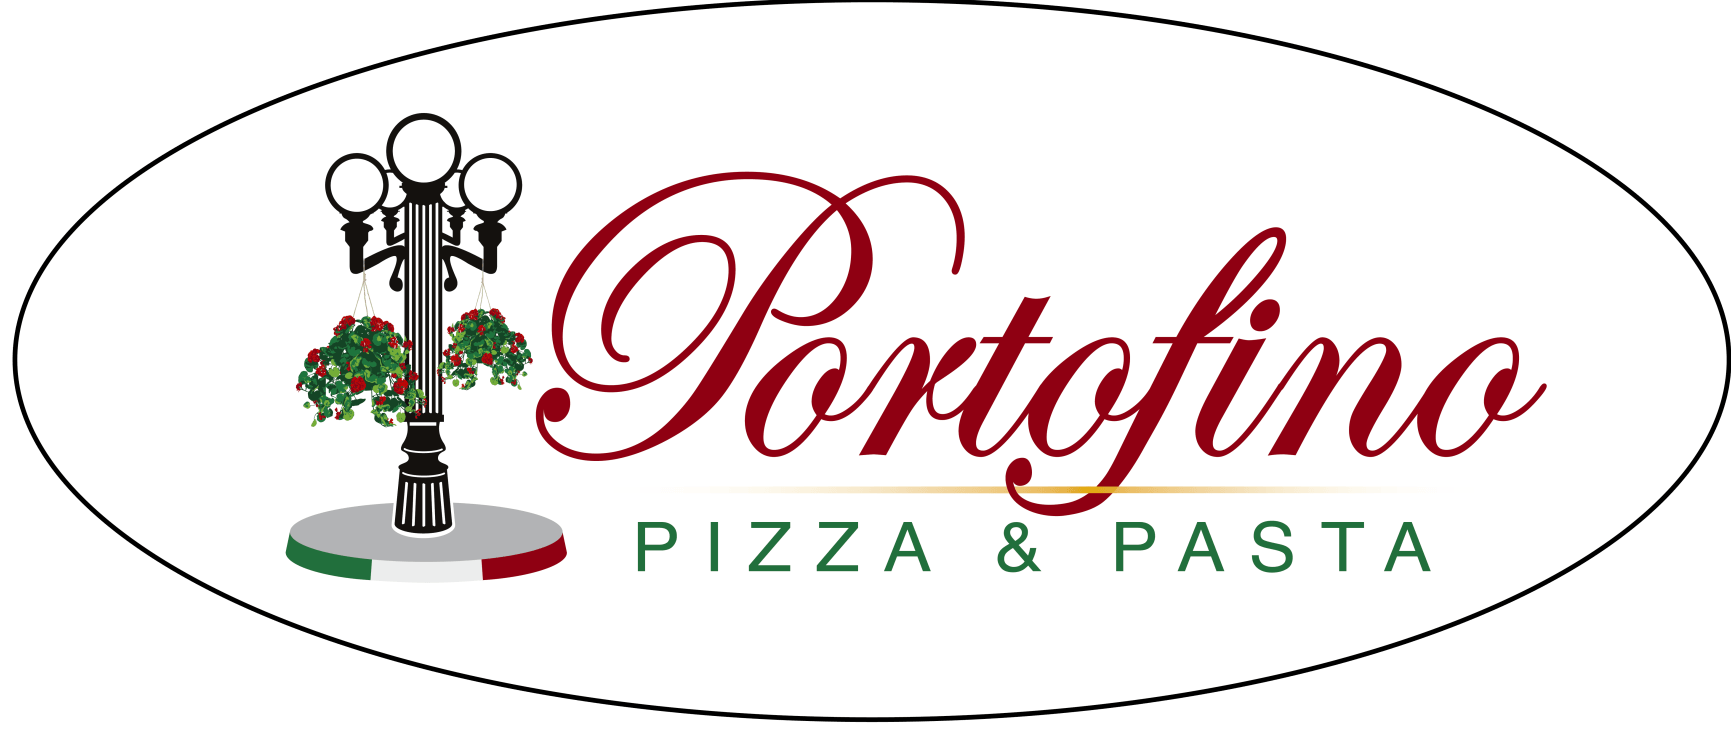 Portofino Pizza & Pasta logo